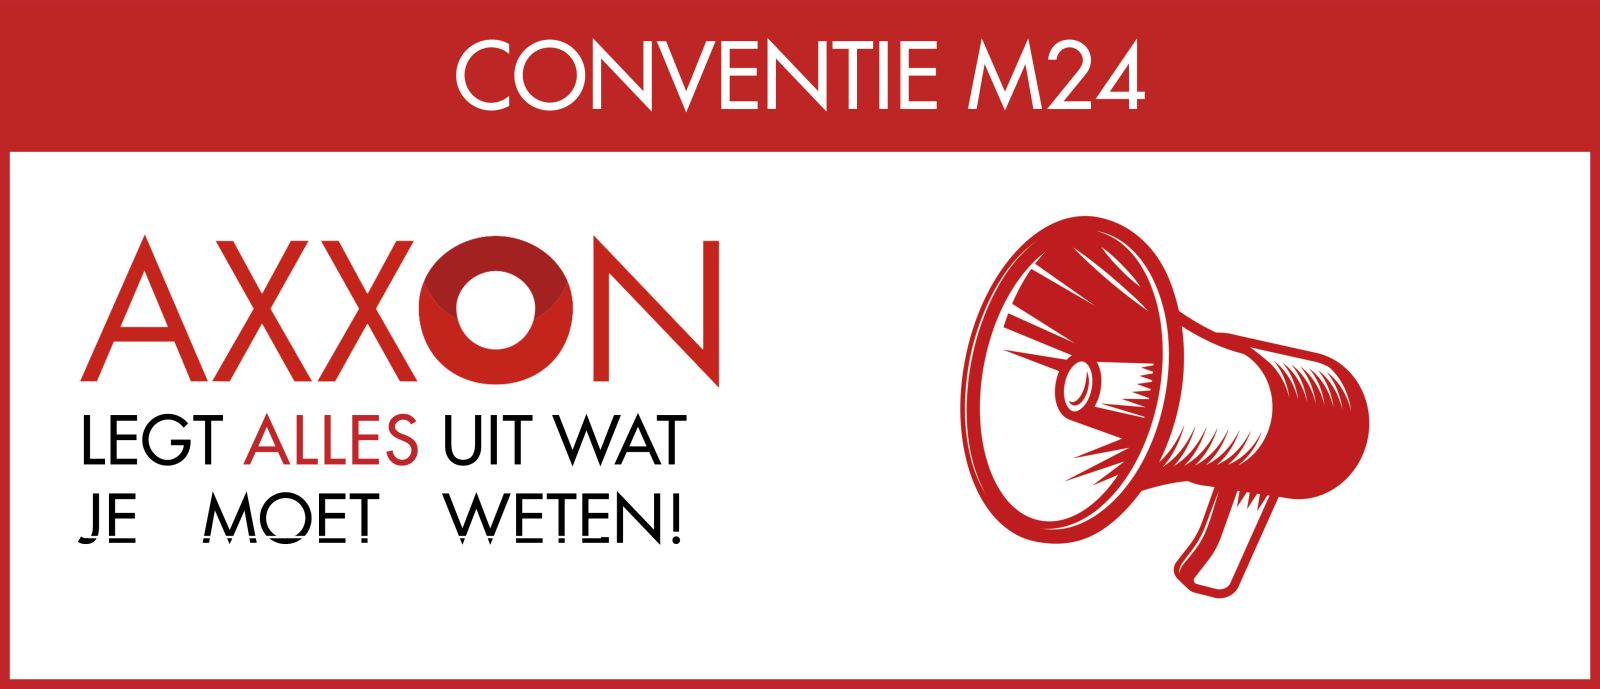 Conventie M24